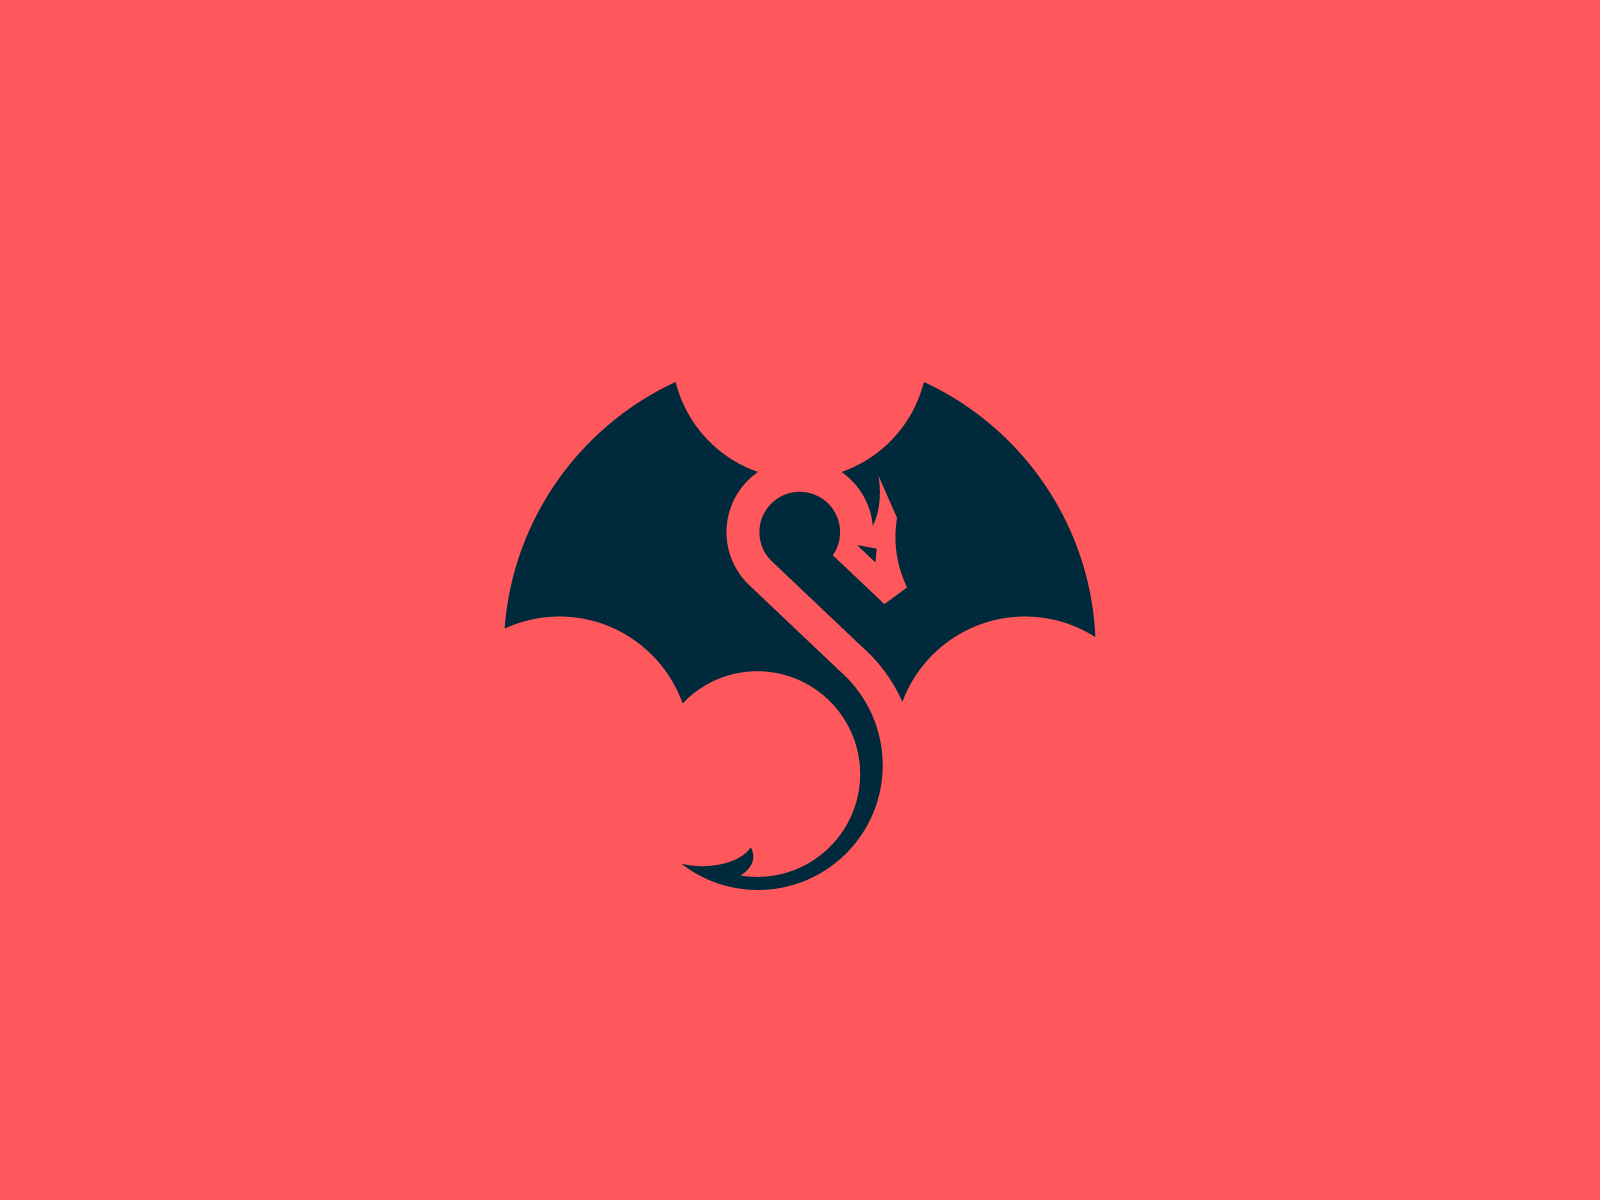 Space Dragon Logo - Dragon by Shibu PG | Dribbble | Dribbble